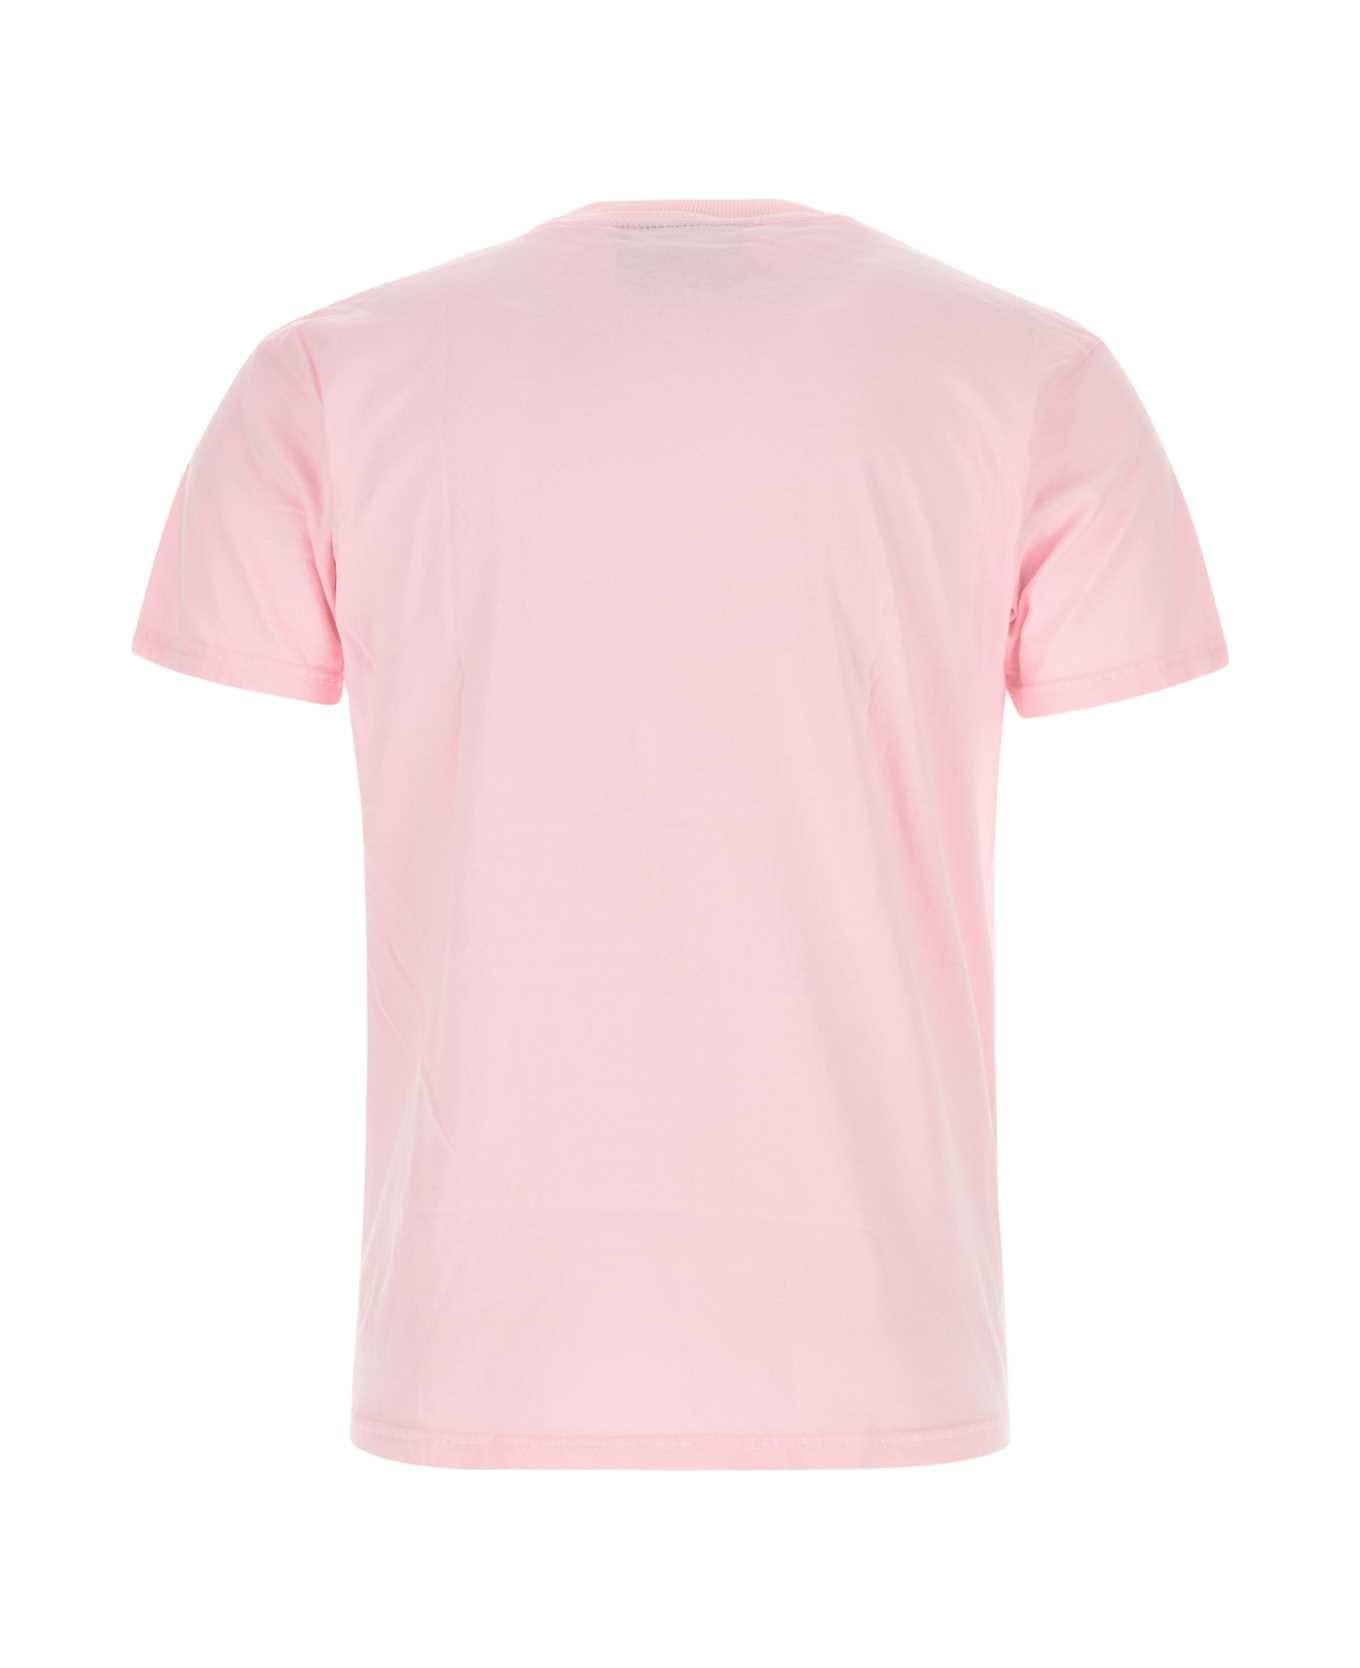 Kidsuper Pink Cotton T-shirt - ABOYPINK シャツ